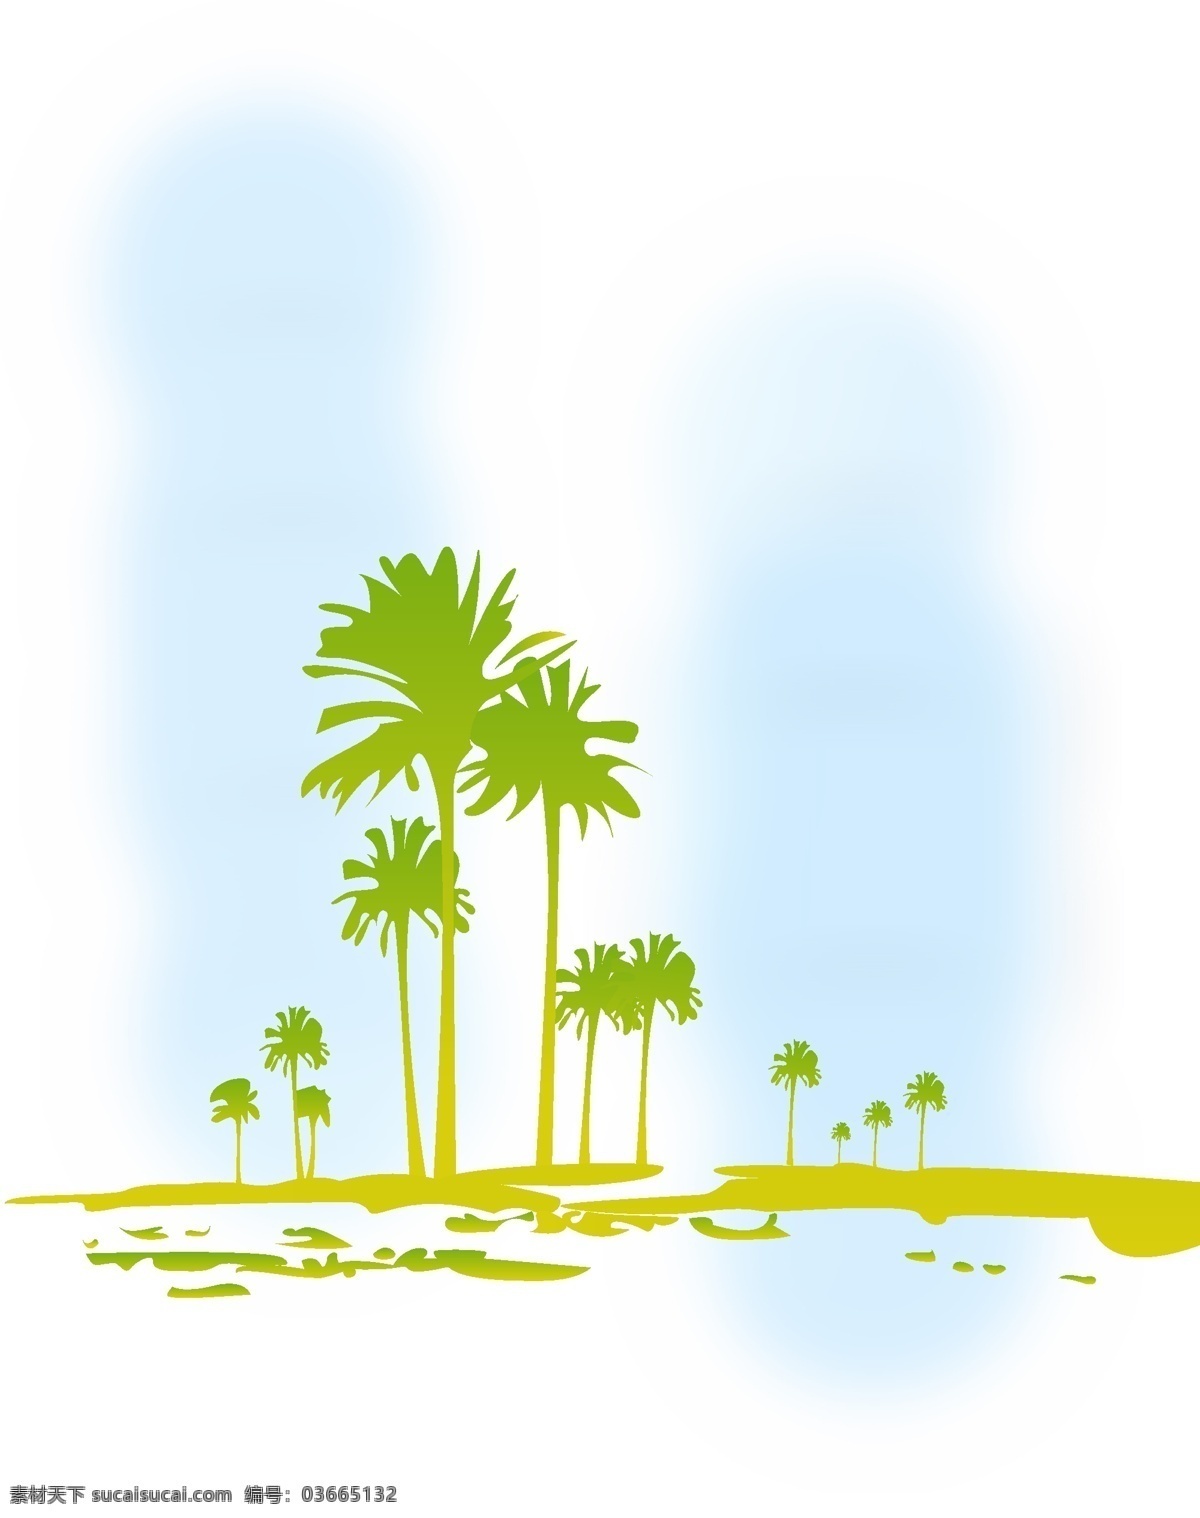 椰树风情 沙滩 绿色背景 黄色 自然景观 自然风景 美丽风景 矢量图库